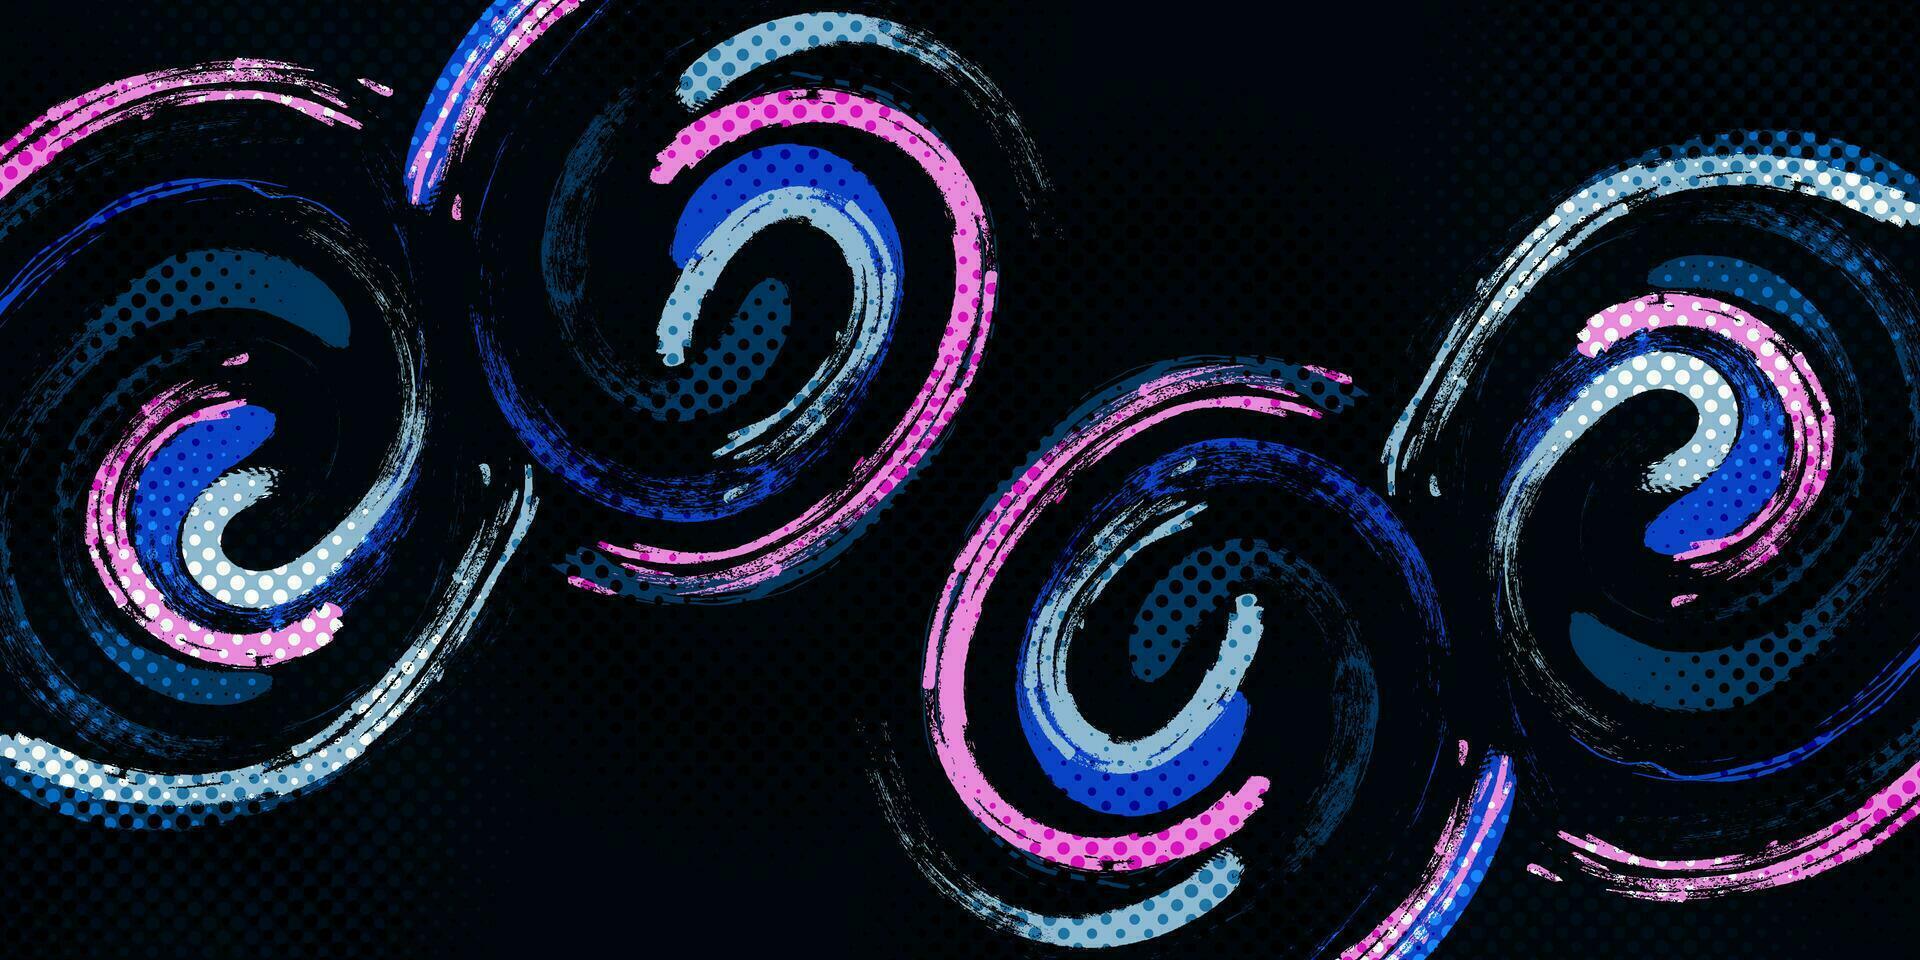 abstract en kleurrijk borstel achtergrond met halftone effect. sport spandoek. borstel beroerte illustratie. krassen en structuur elementen voor ontwerp vector